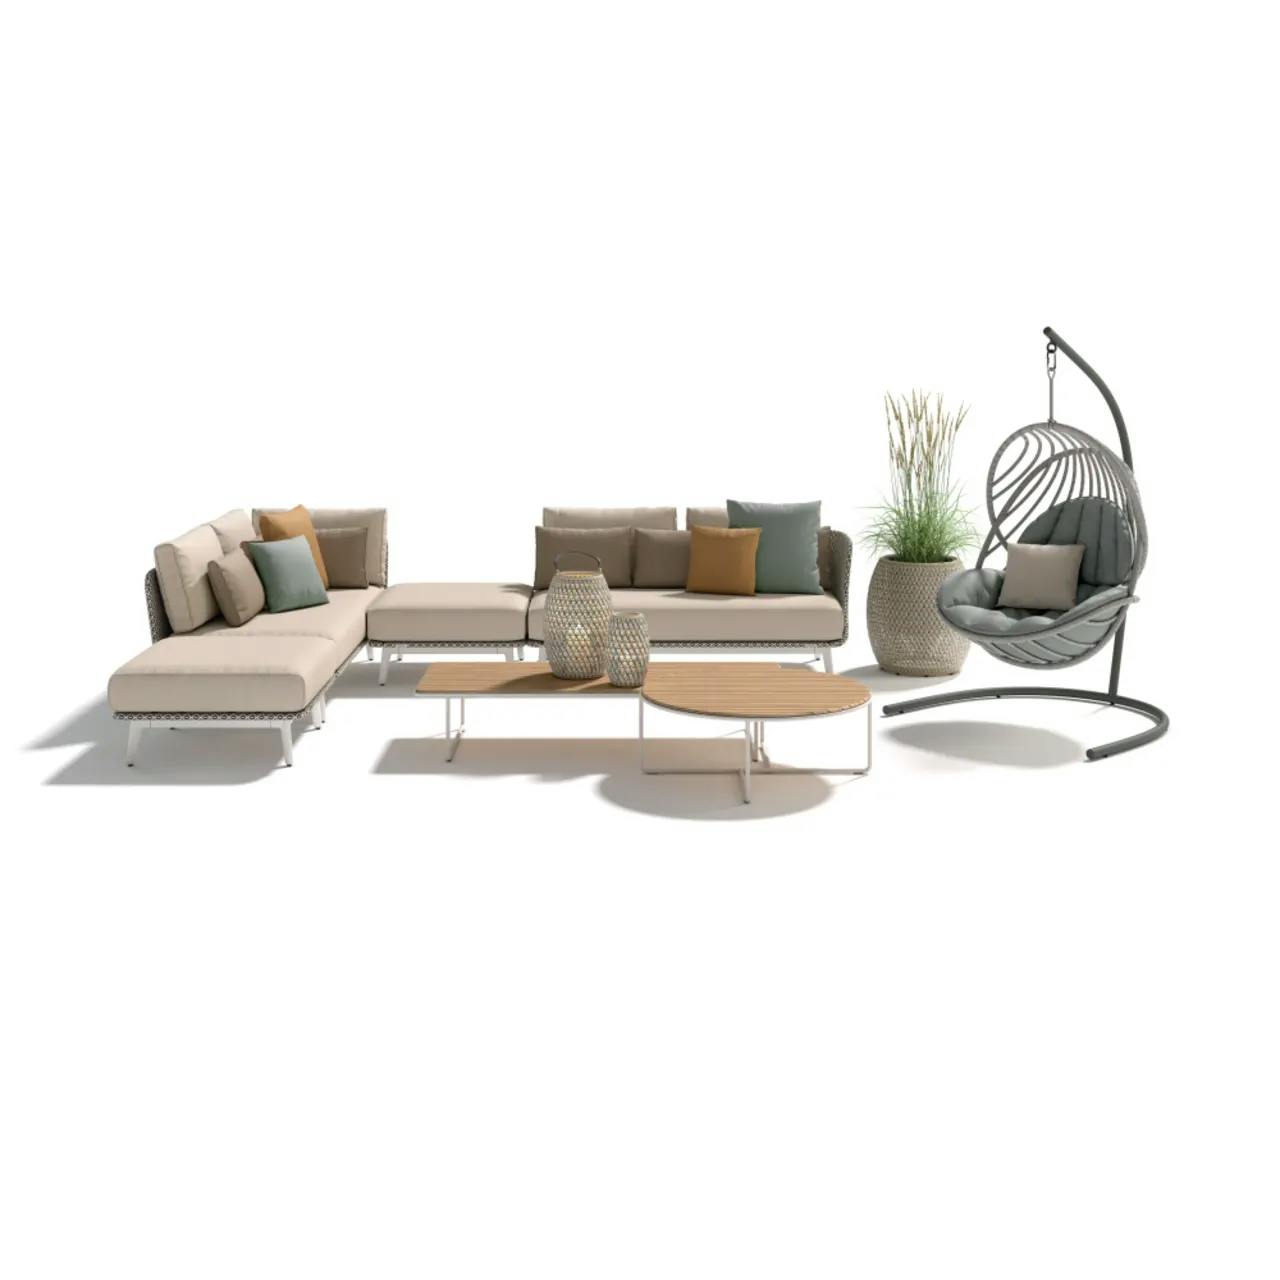 DEDON MBARQ Modular Seating | DALA Lanterns & Planter | KIDA Hanging Lounge Chair